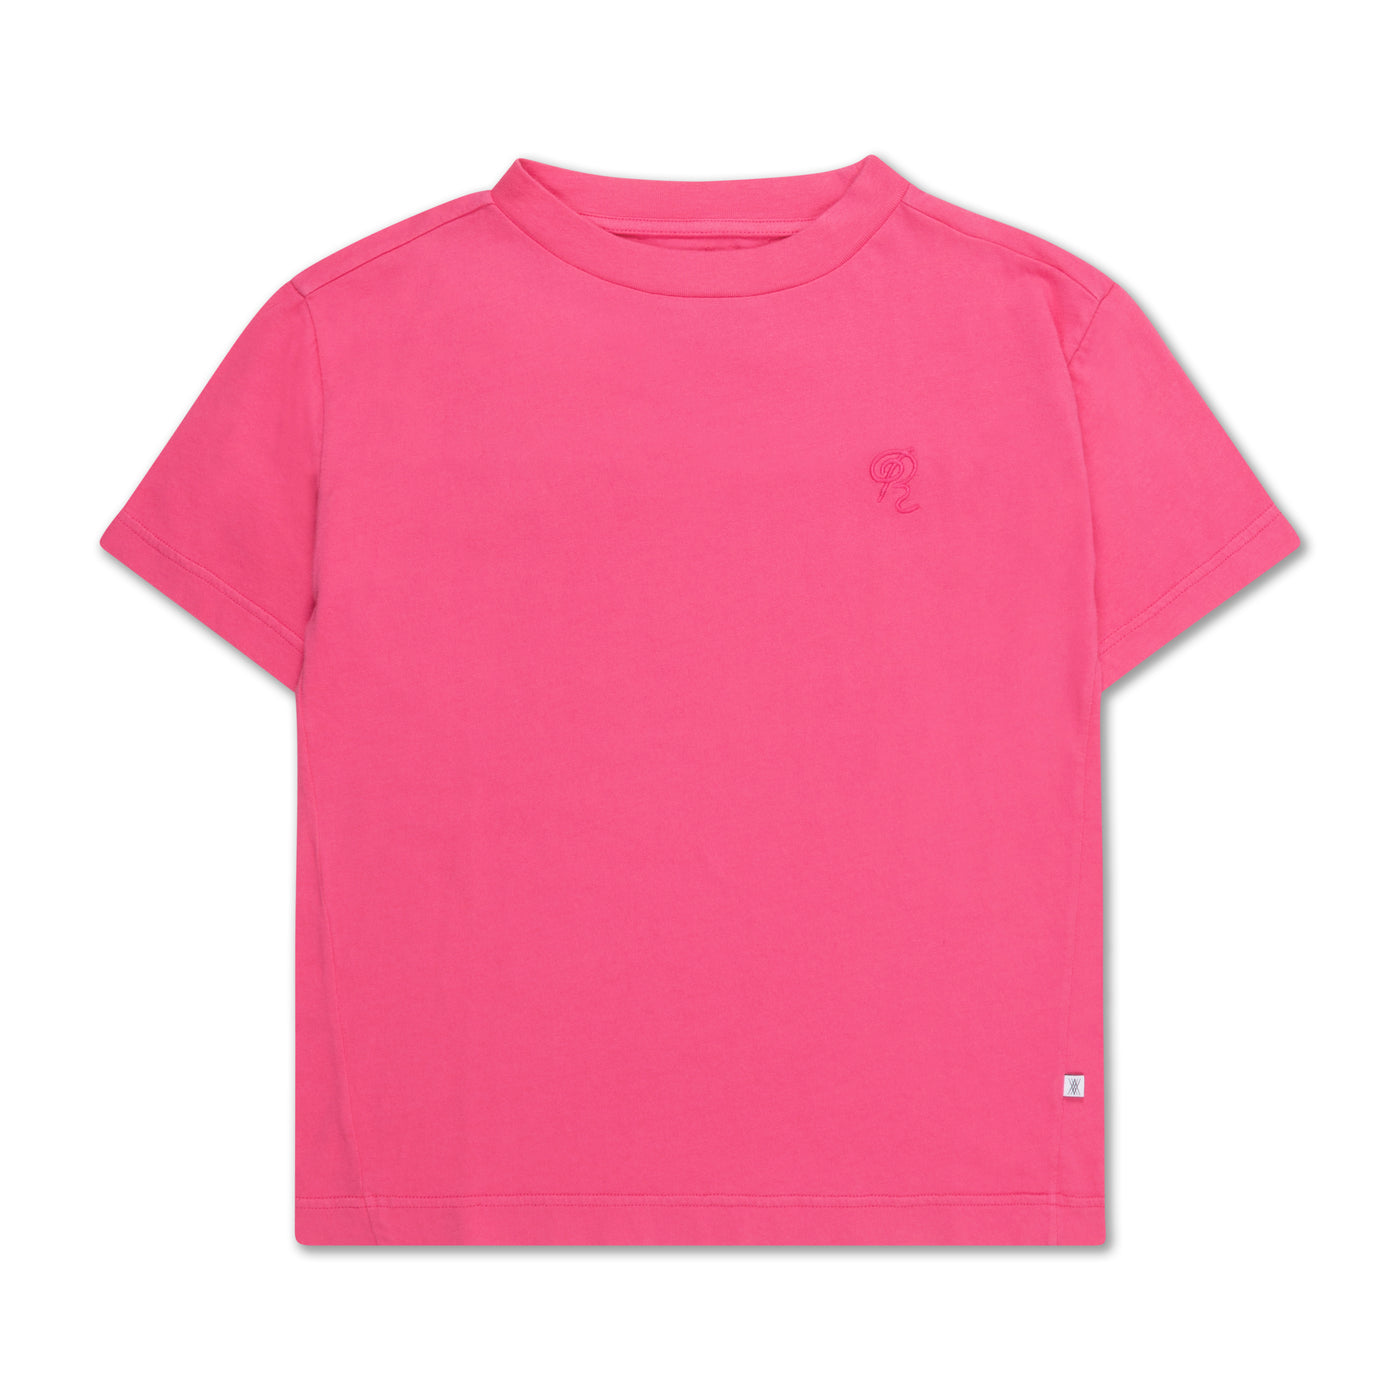 tee shirt pink rose